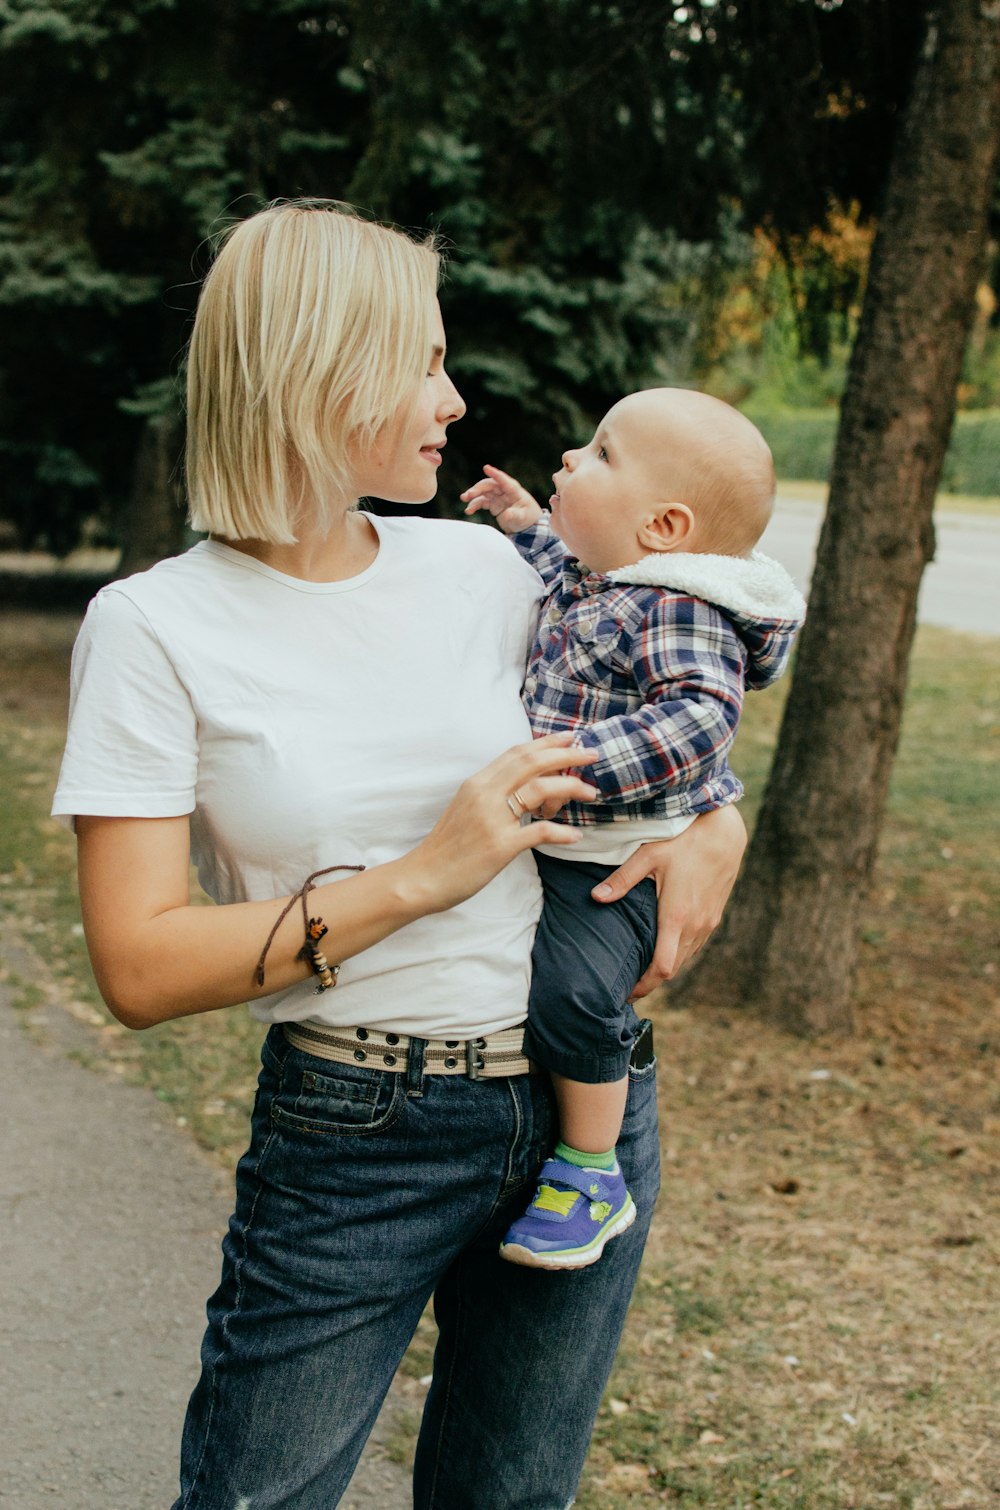 Mujer con camisa blanca que lleva al bebé con camisa a cuadros azul y blanca